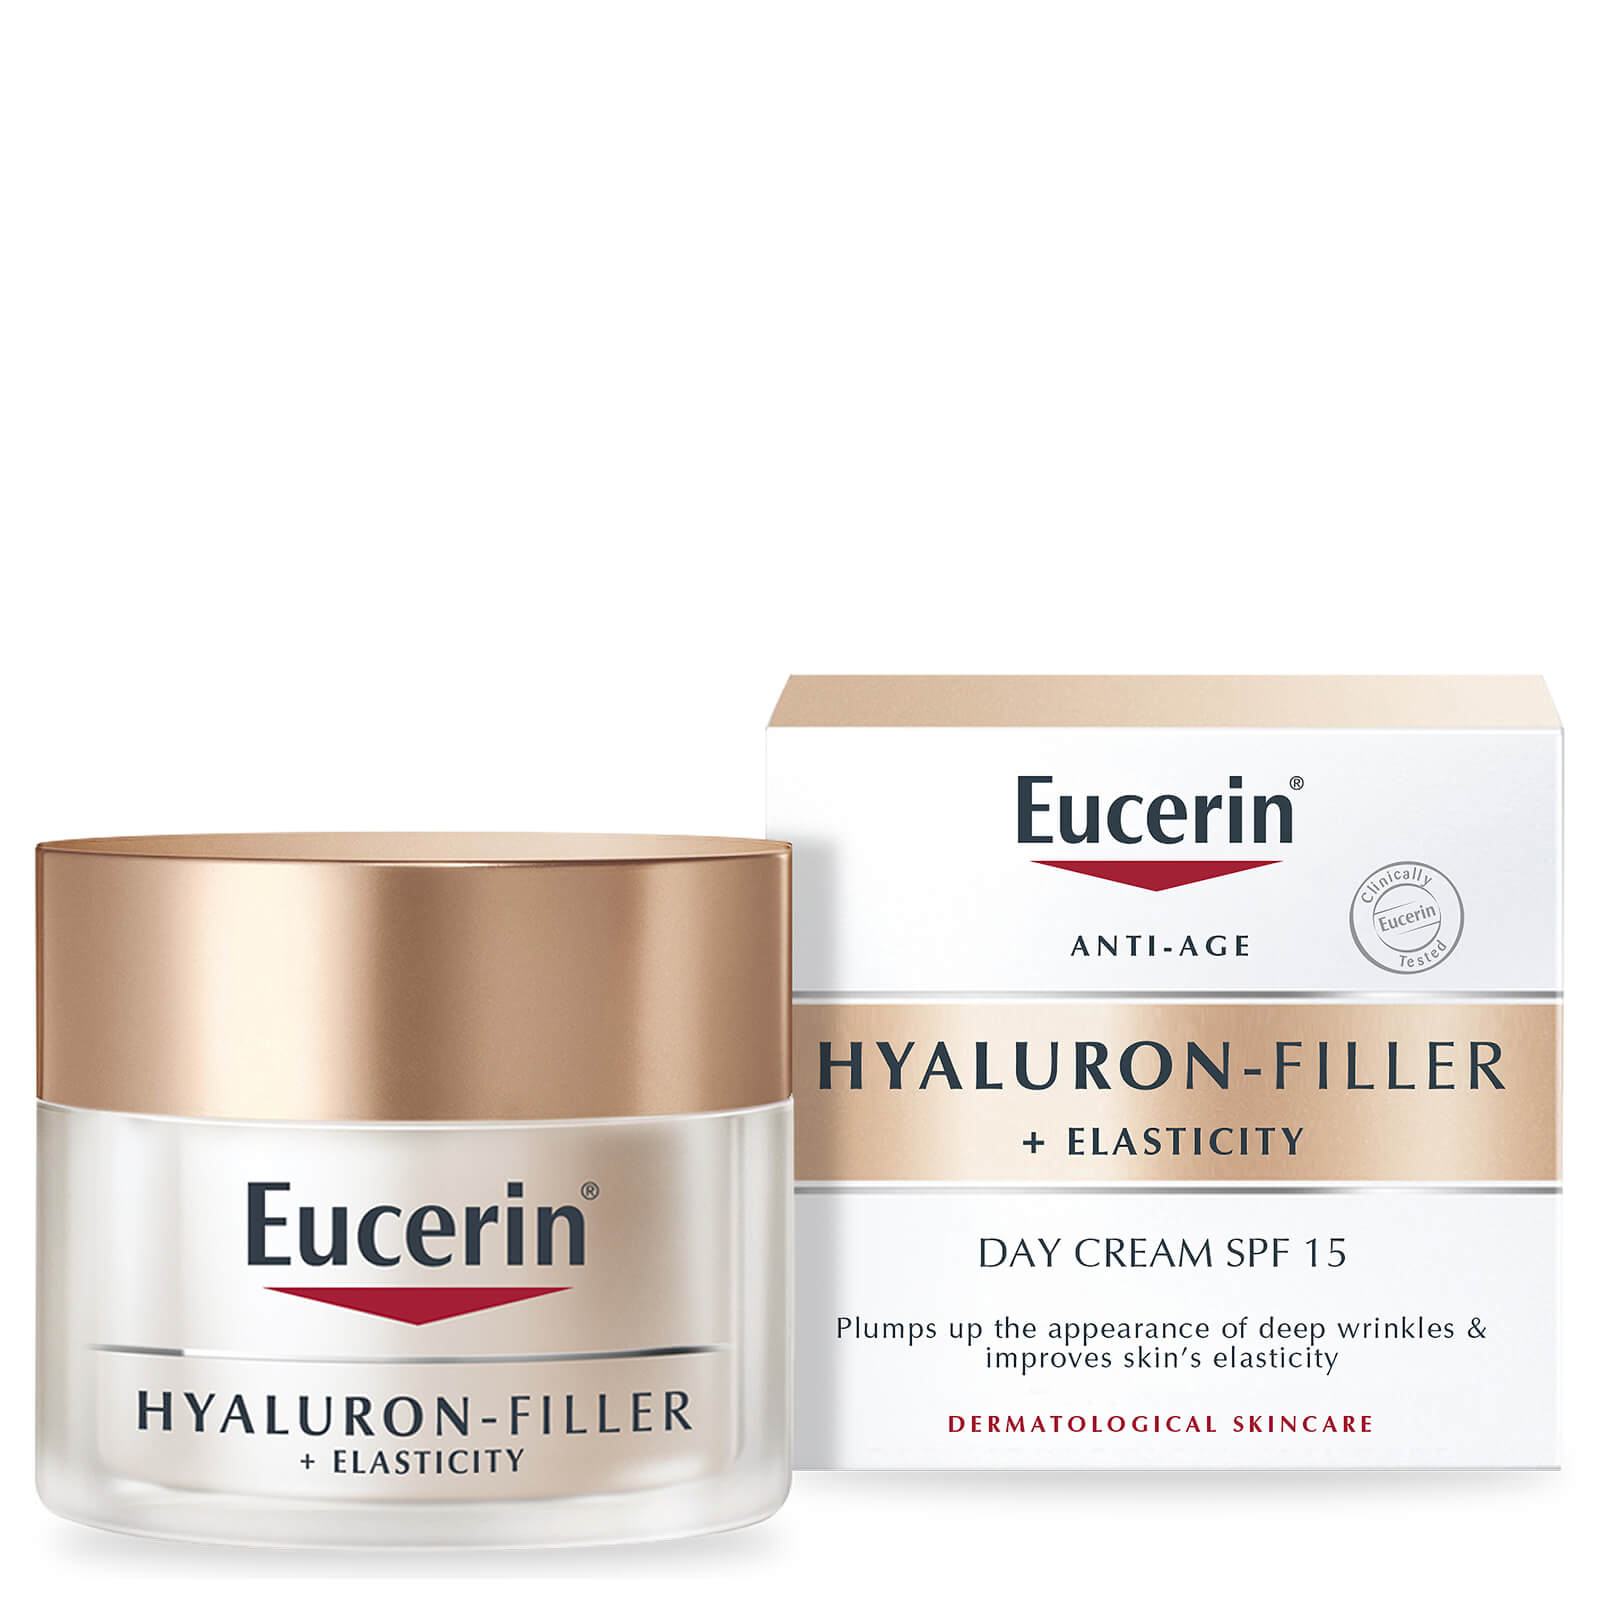 Eucerin HYALURON-FILLER Wrinkle Filling Treatment Day Cream SPF15